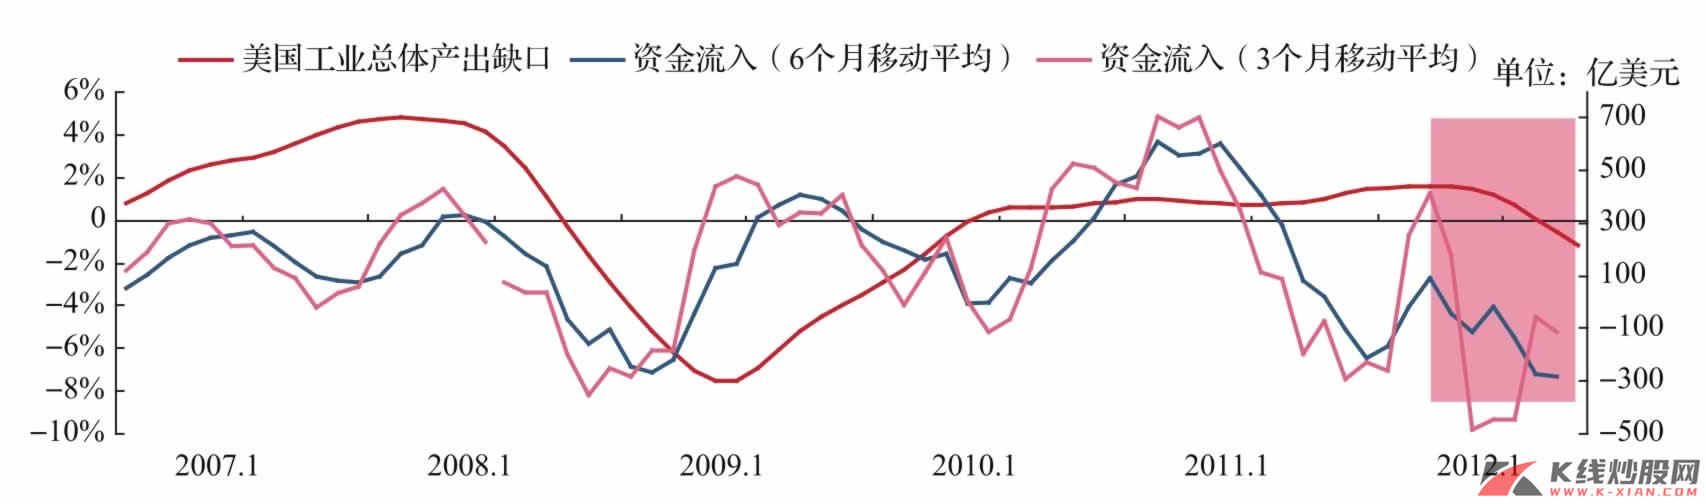 中国资本流入与美国经济周期